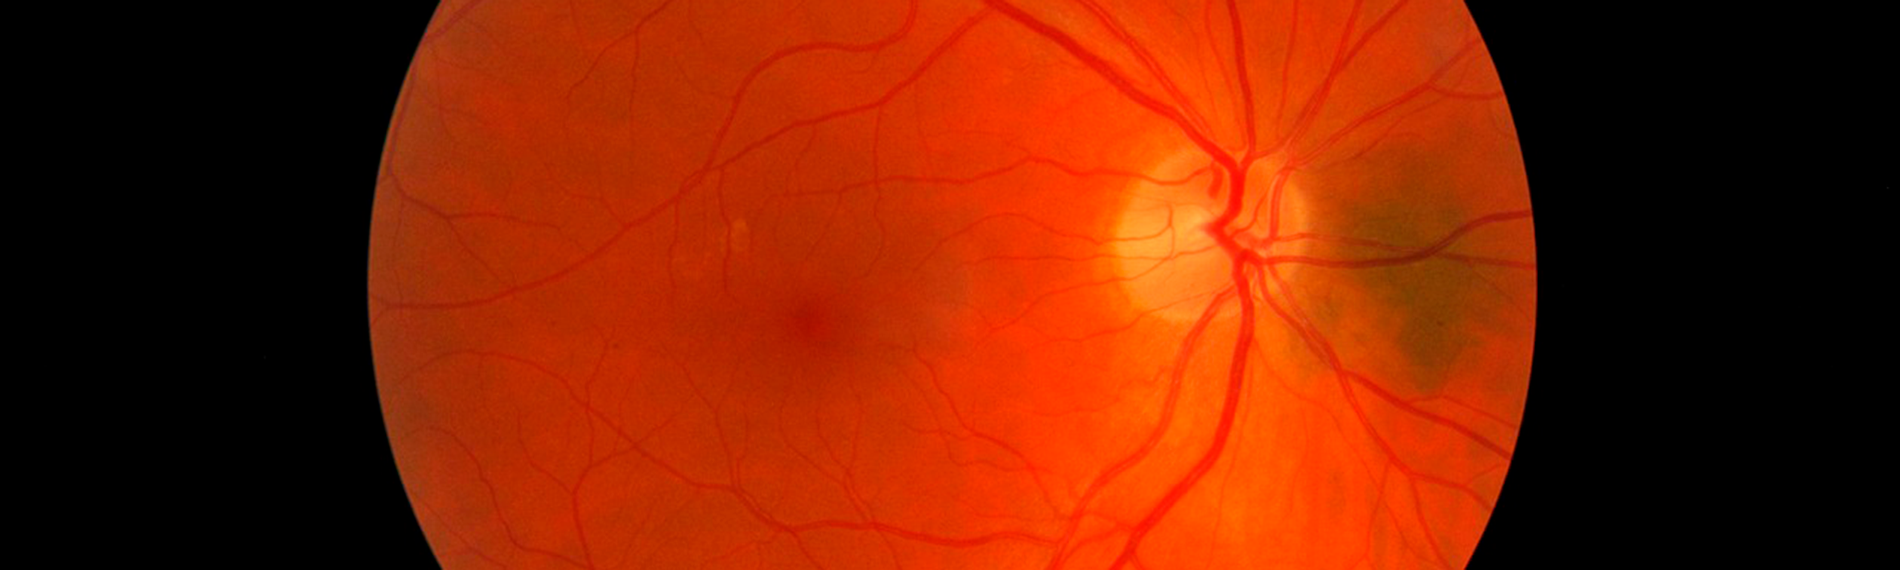 desprendimiento de retina por traumatismo